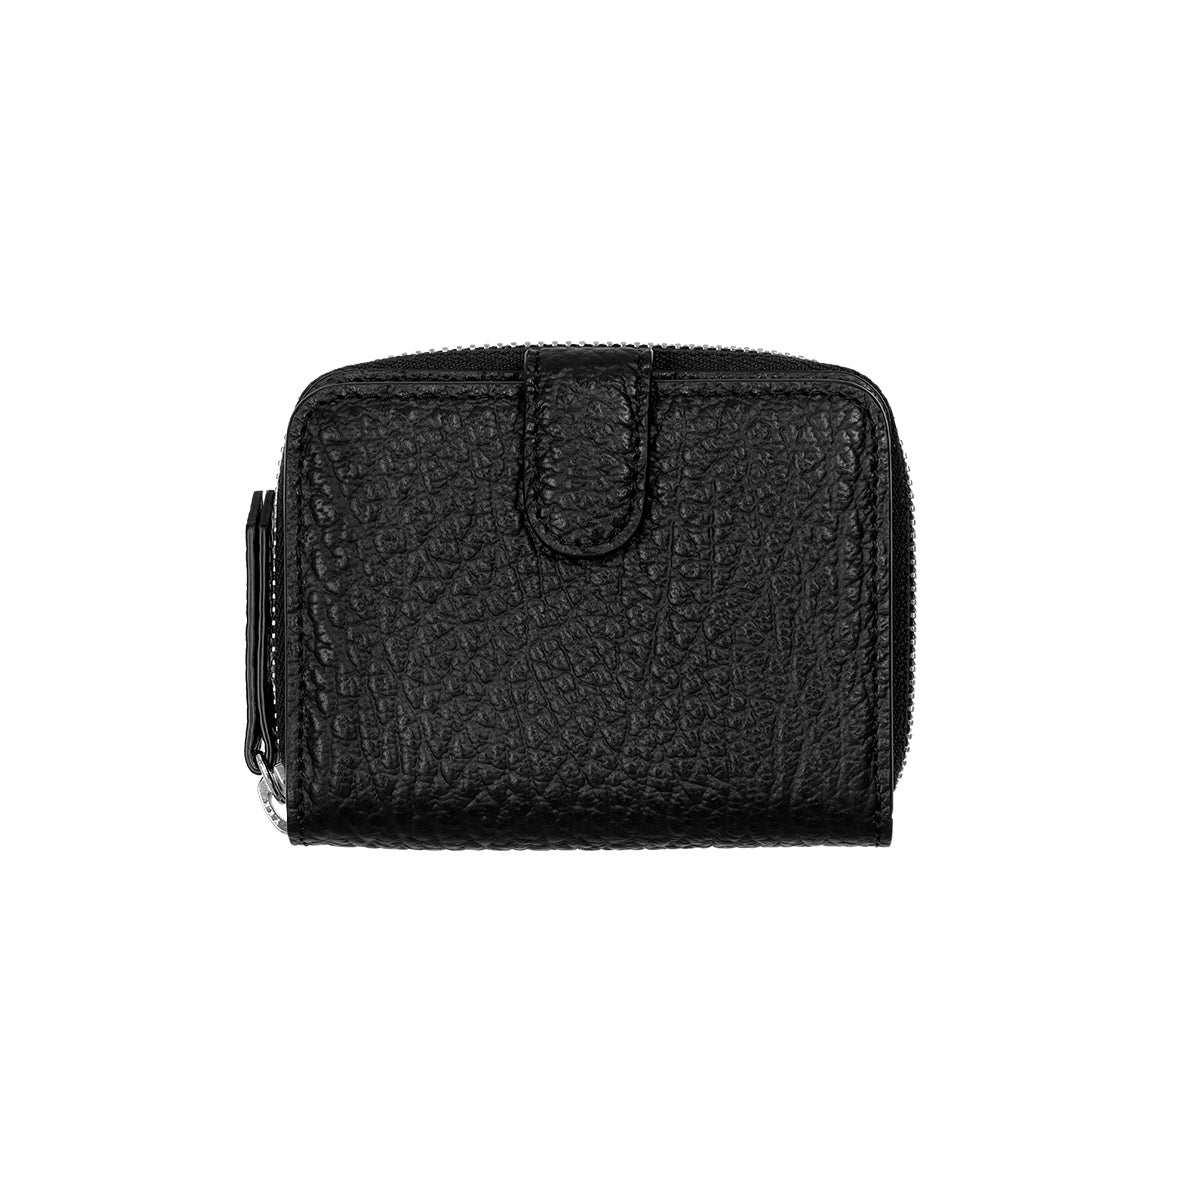 Maison Margiela leather zip wallet102cm×92cmcolor